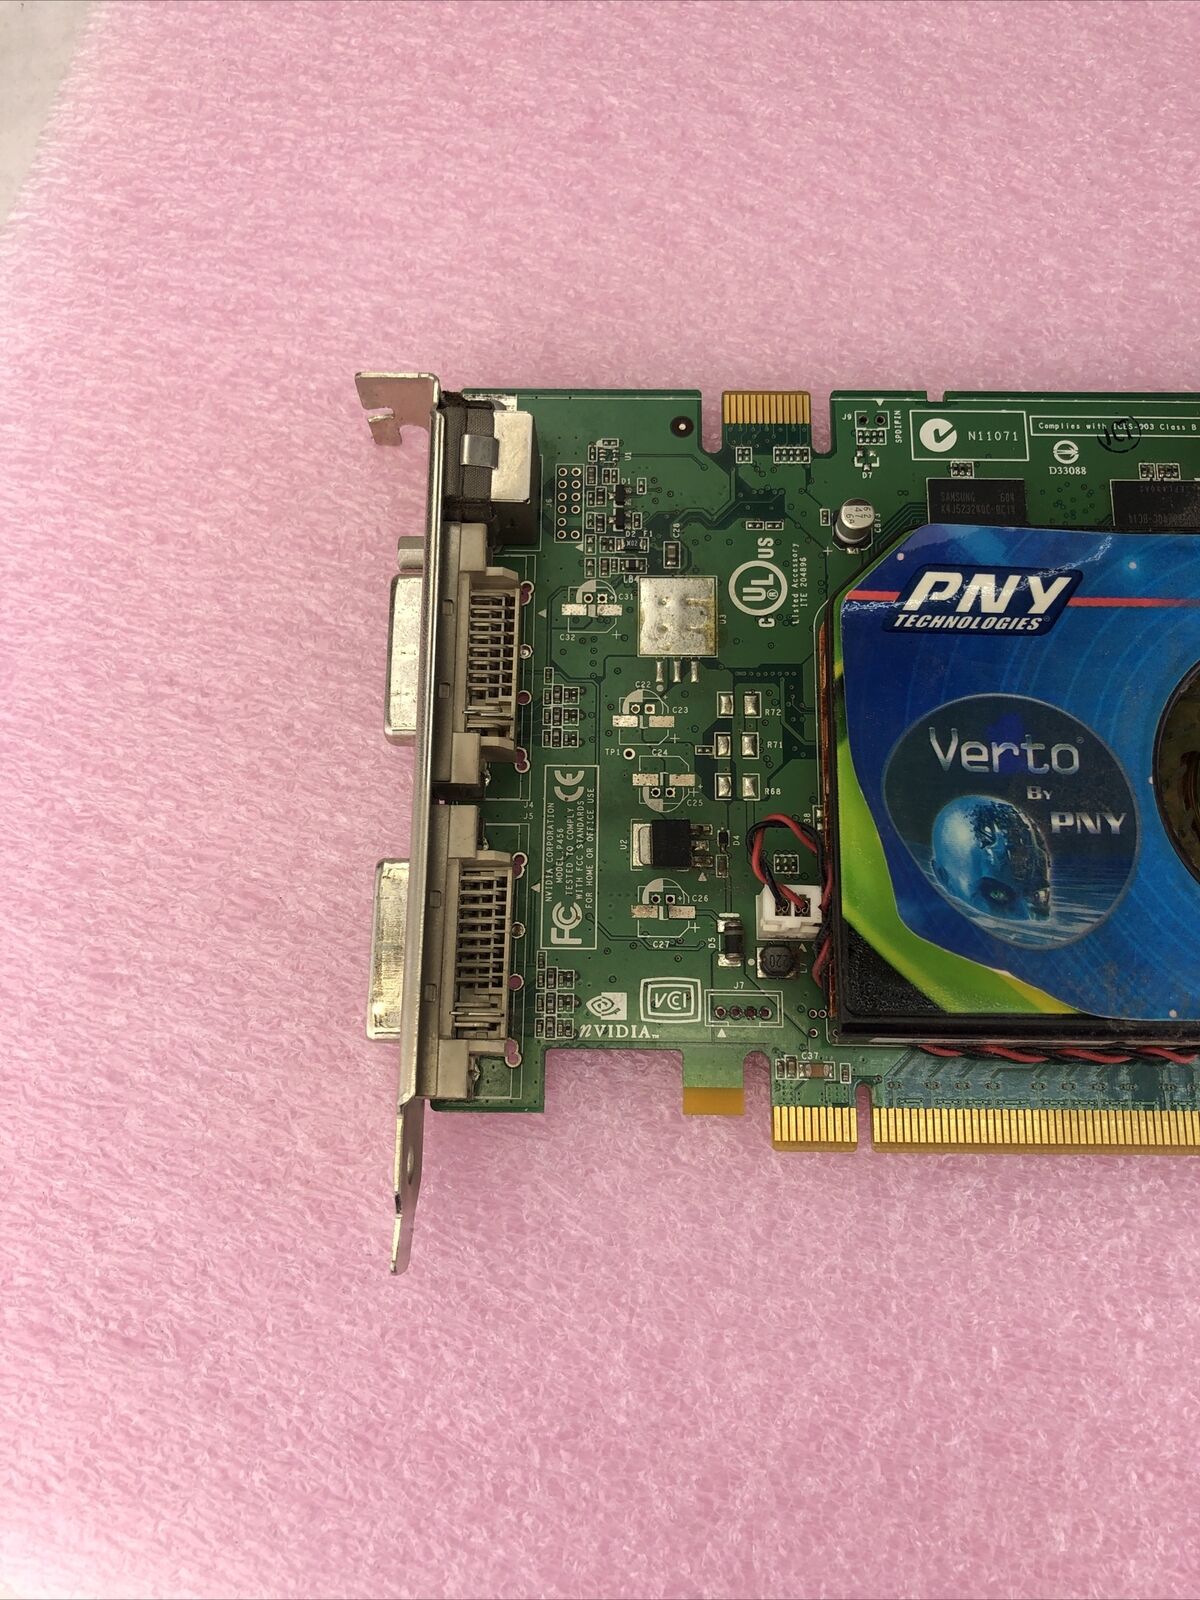 PNY GeForce 7600GT 256MB SLI Dual DVI PCI-E Video Card VCG7600GXPB GPU